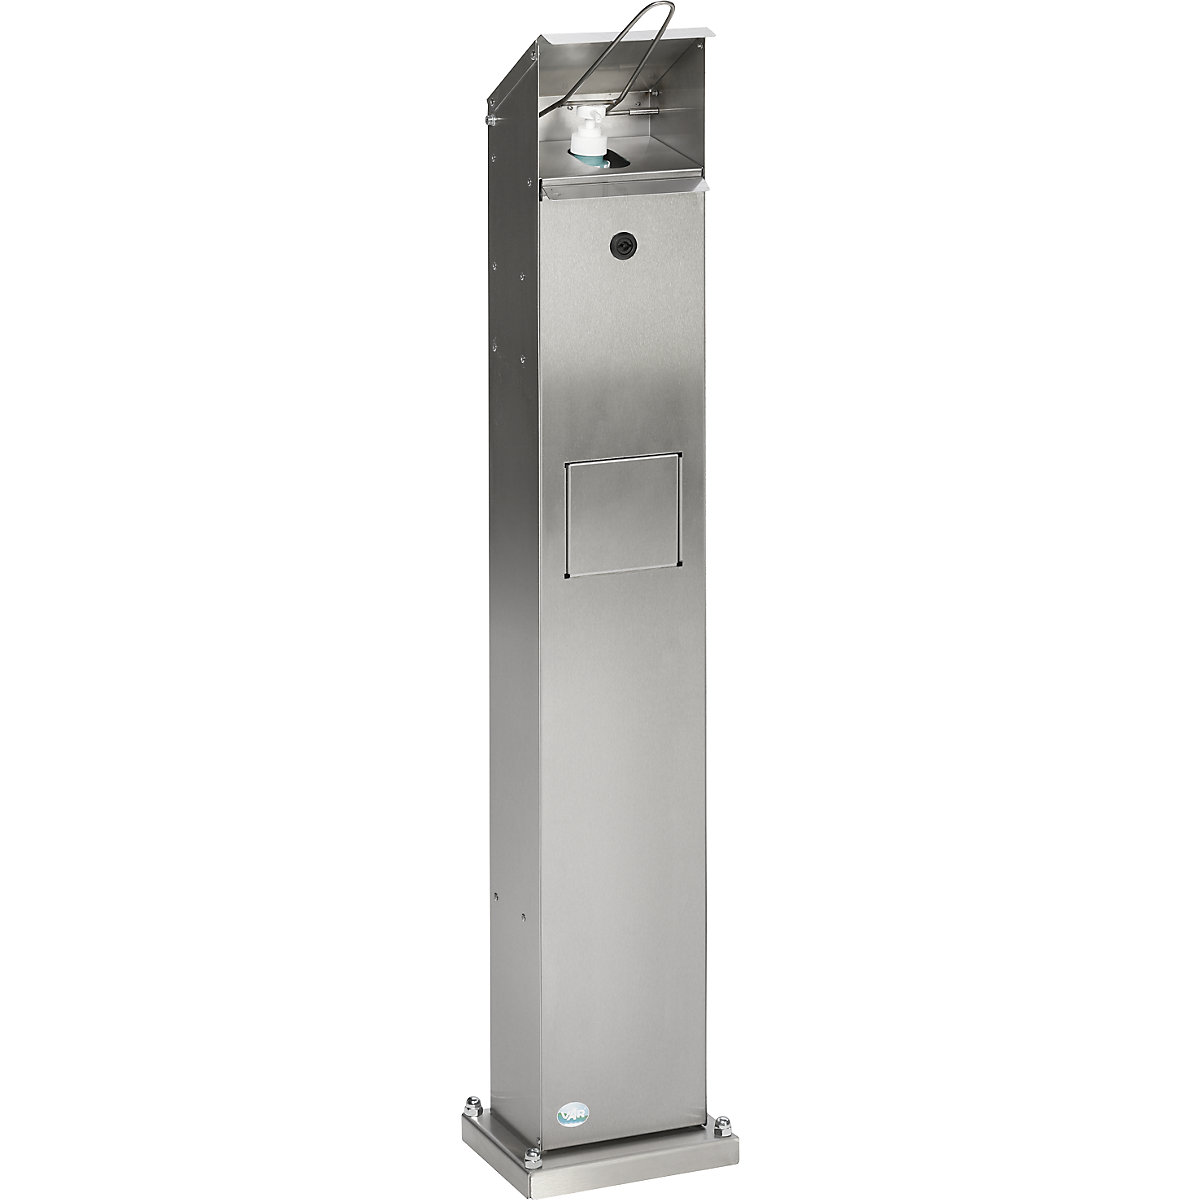 Handdesinfectiedispenser – VAR, voor buiten, met 5-liter afvalemmer, roestvast staal-2